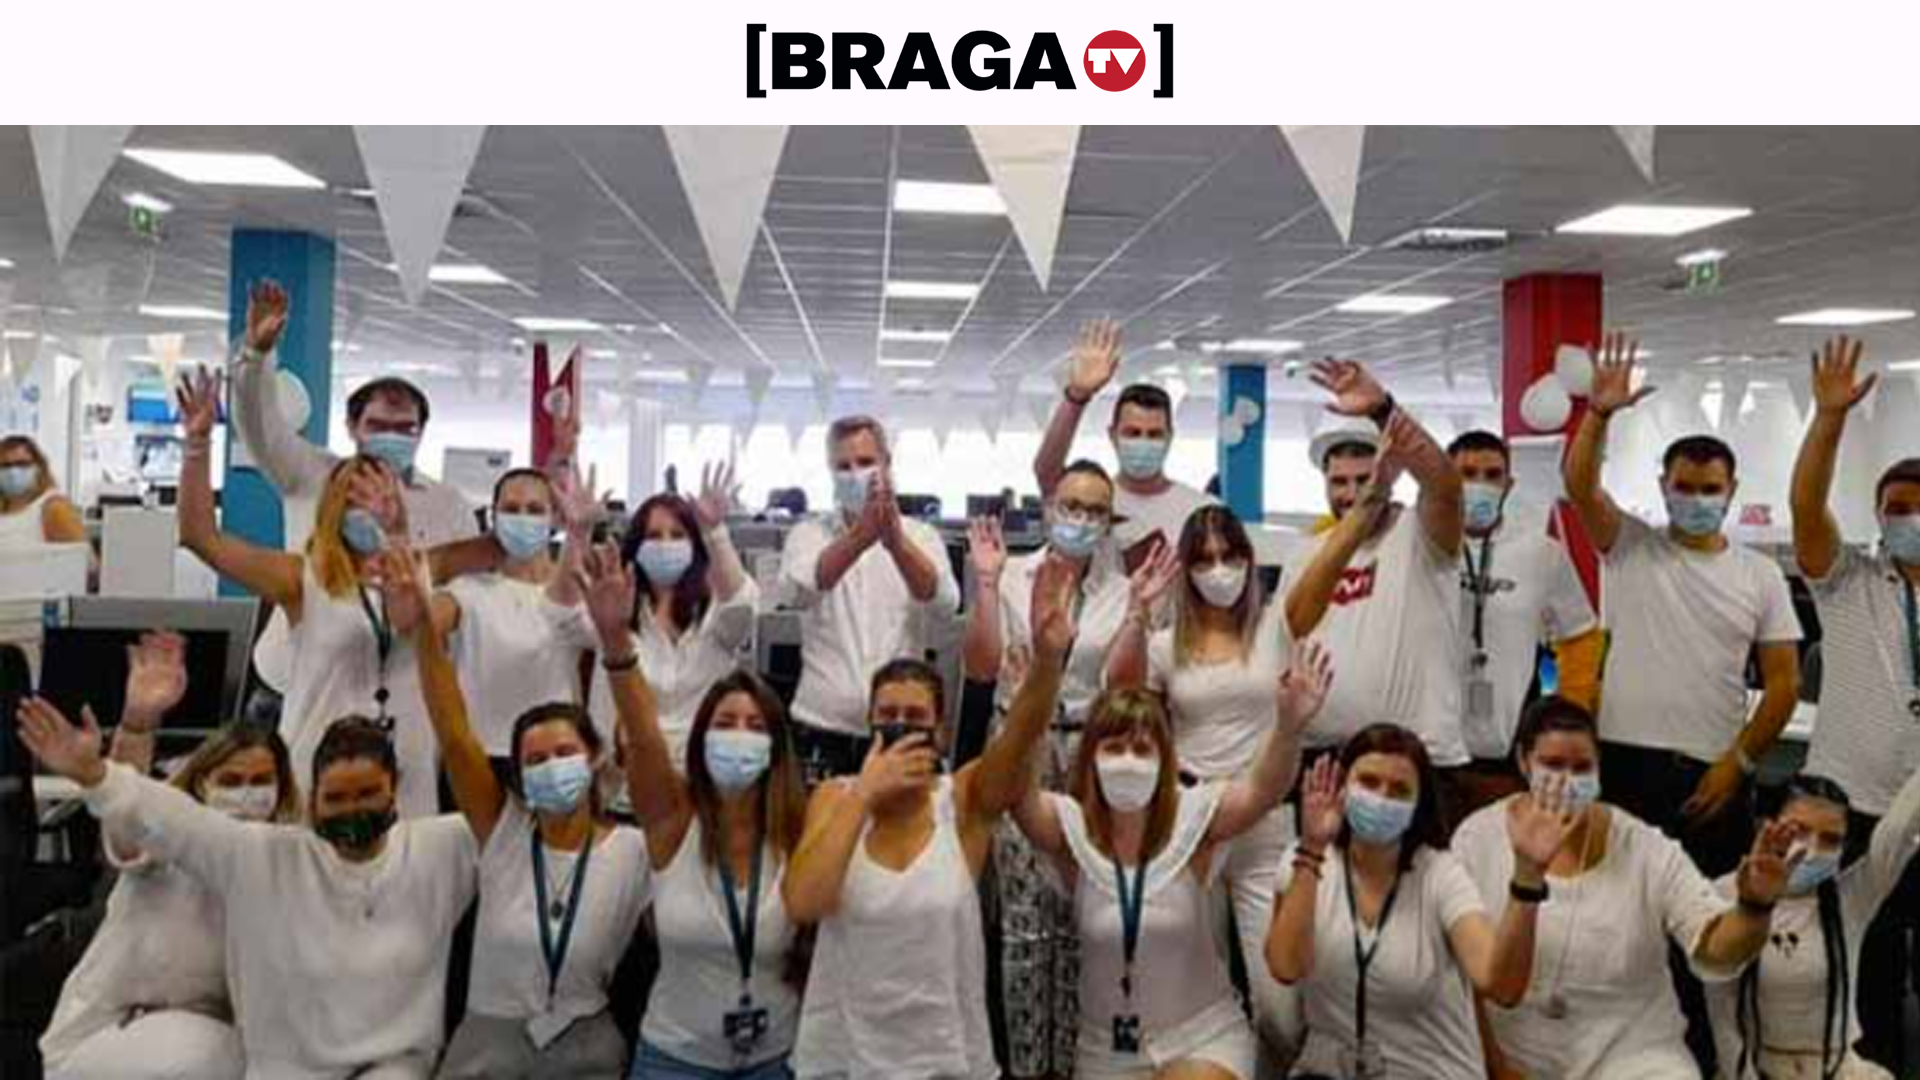 Webhelp Braga é das melhores empresas para trabalhar em Portugal